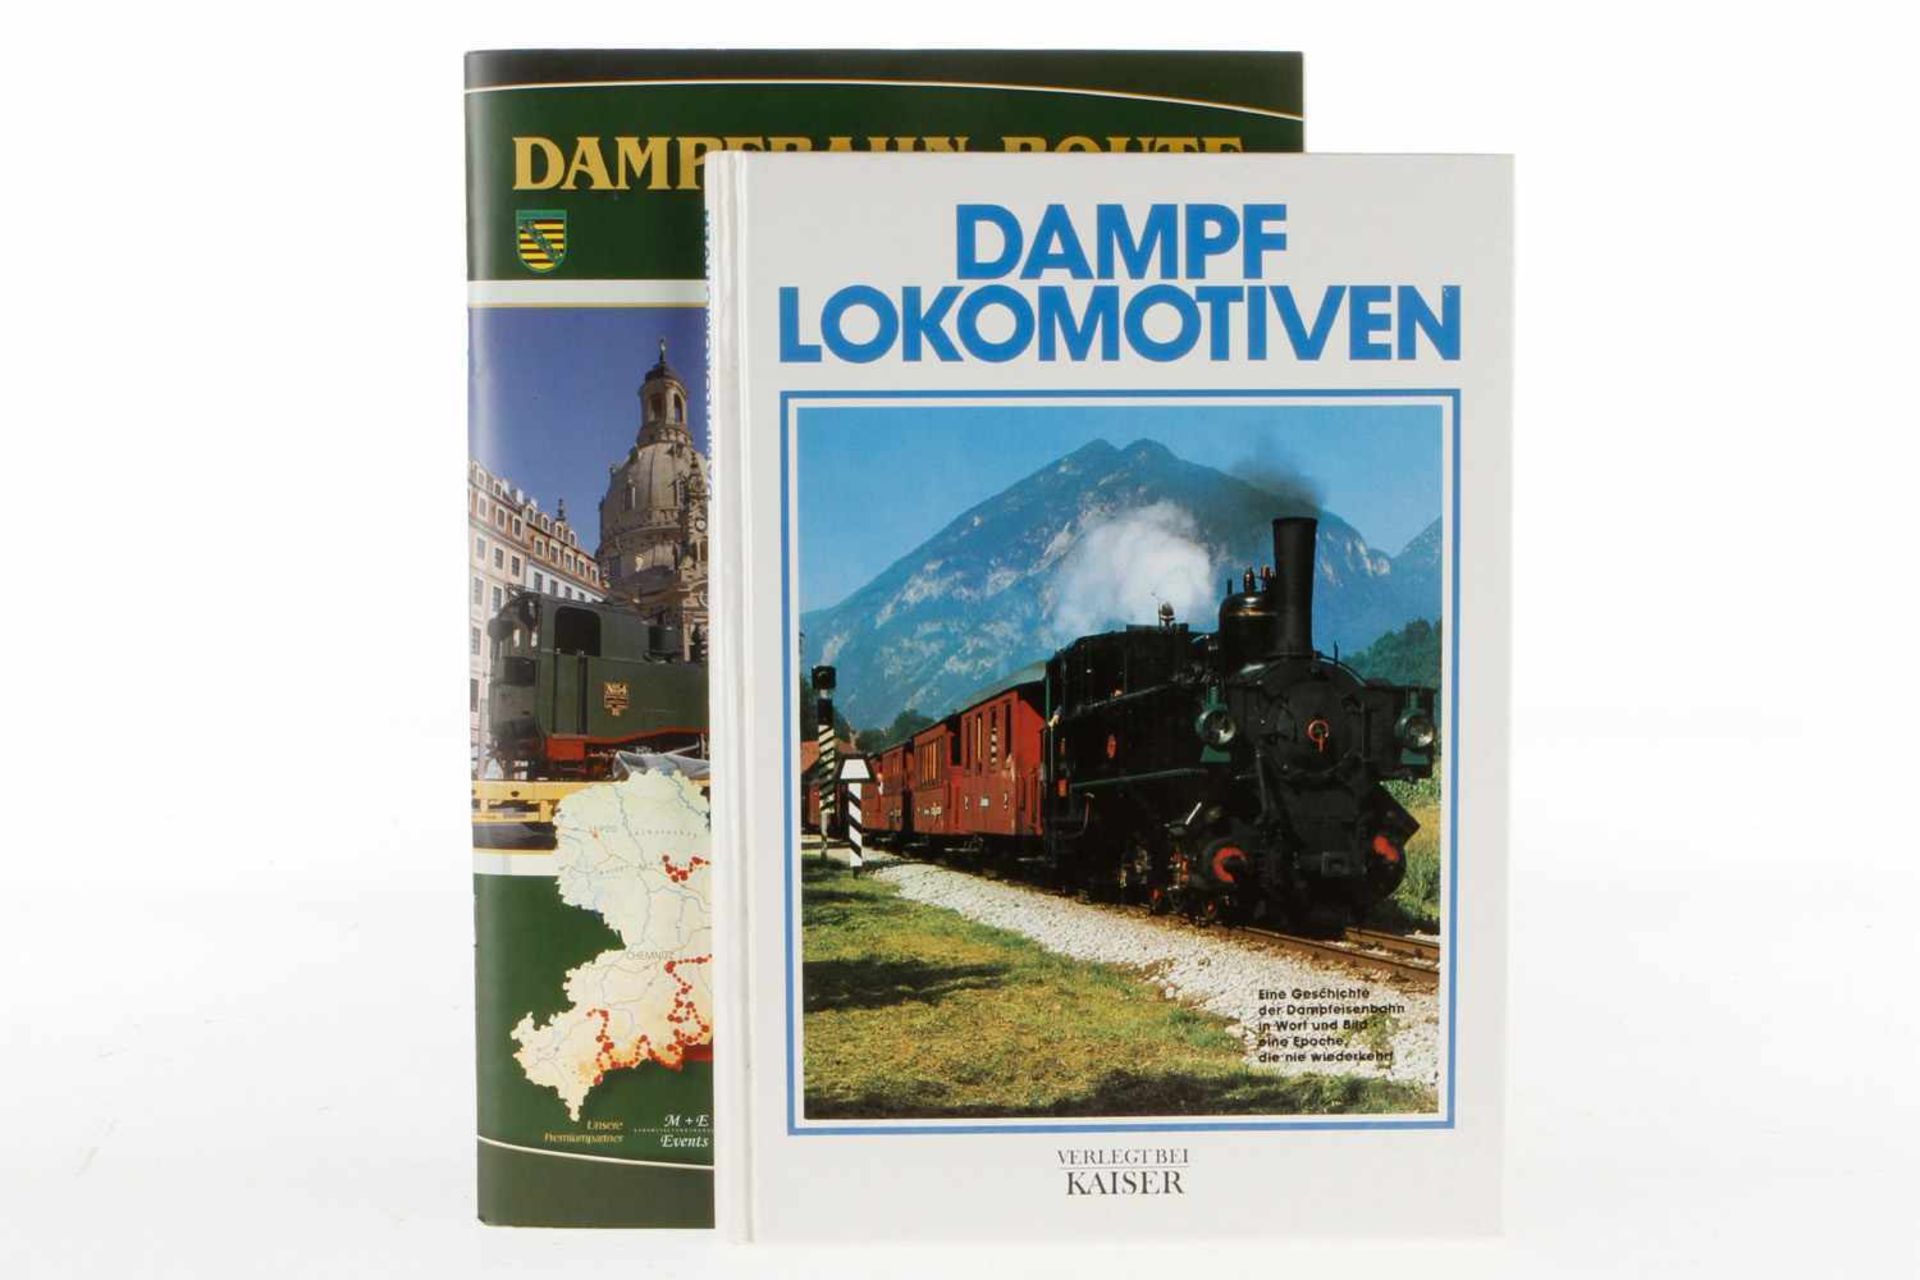 Zeitschrift "Dampfbahn-Route Sachsen" und Buch "Dampflokomotiven", Gebrauchsspuren